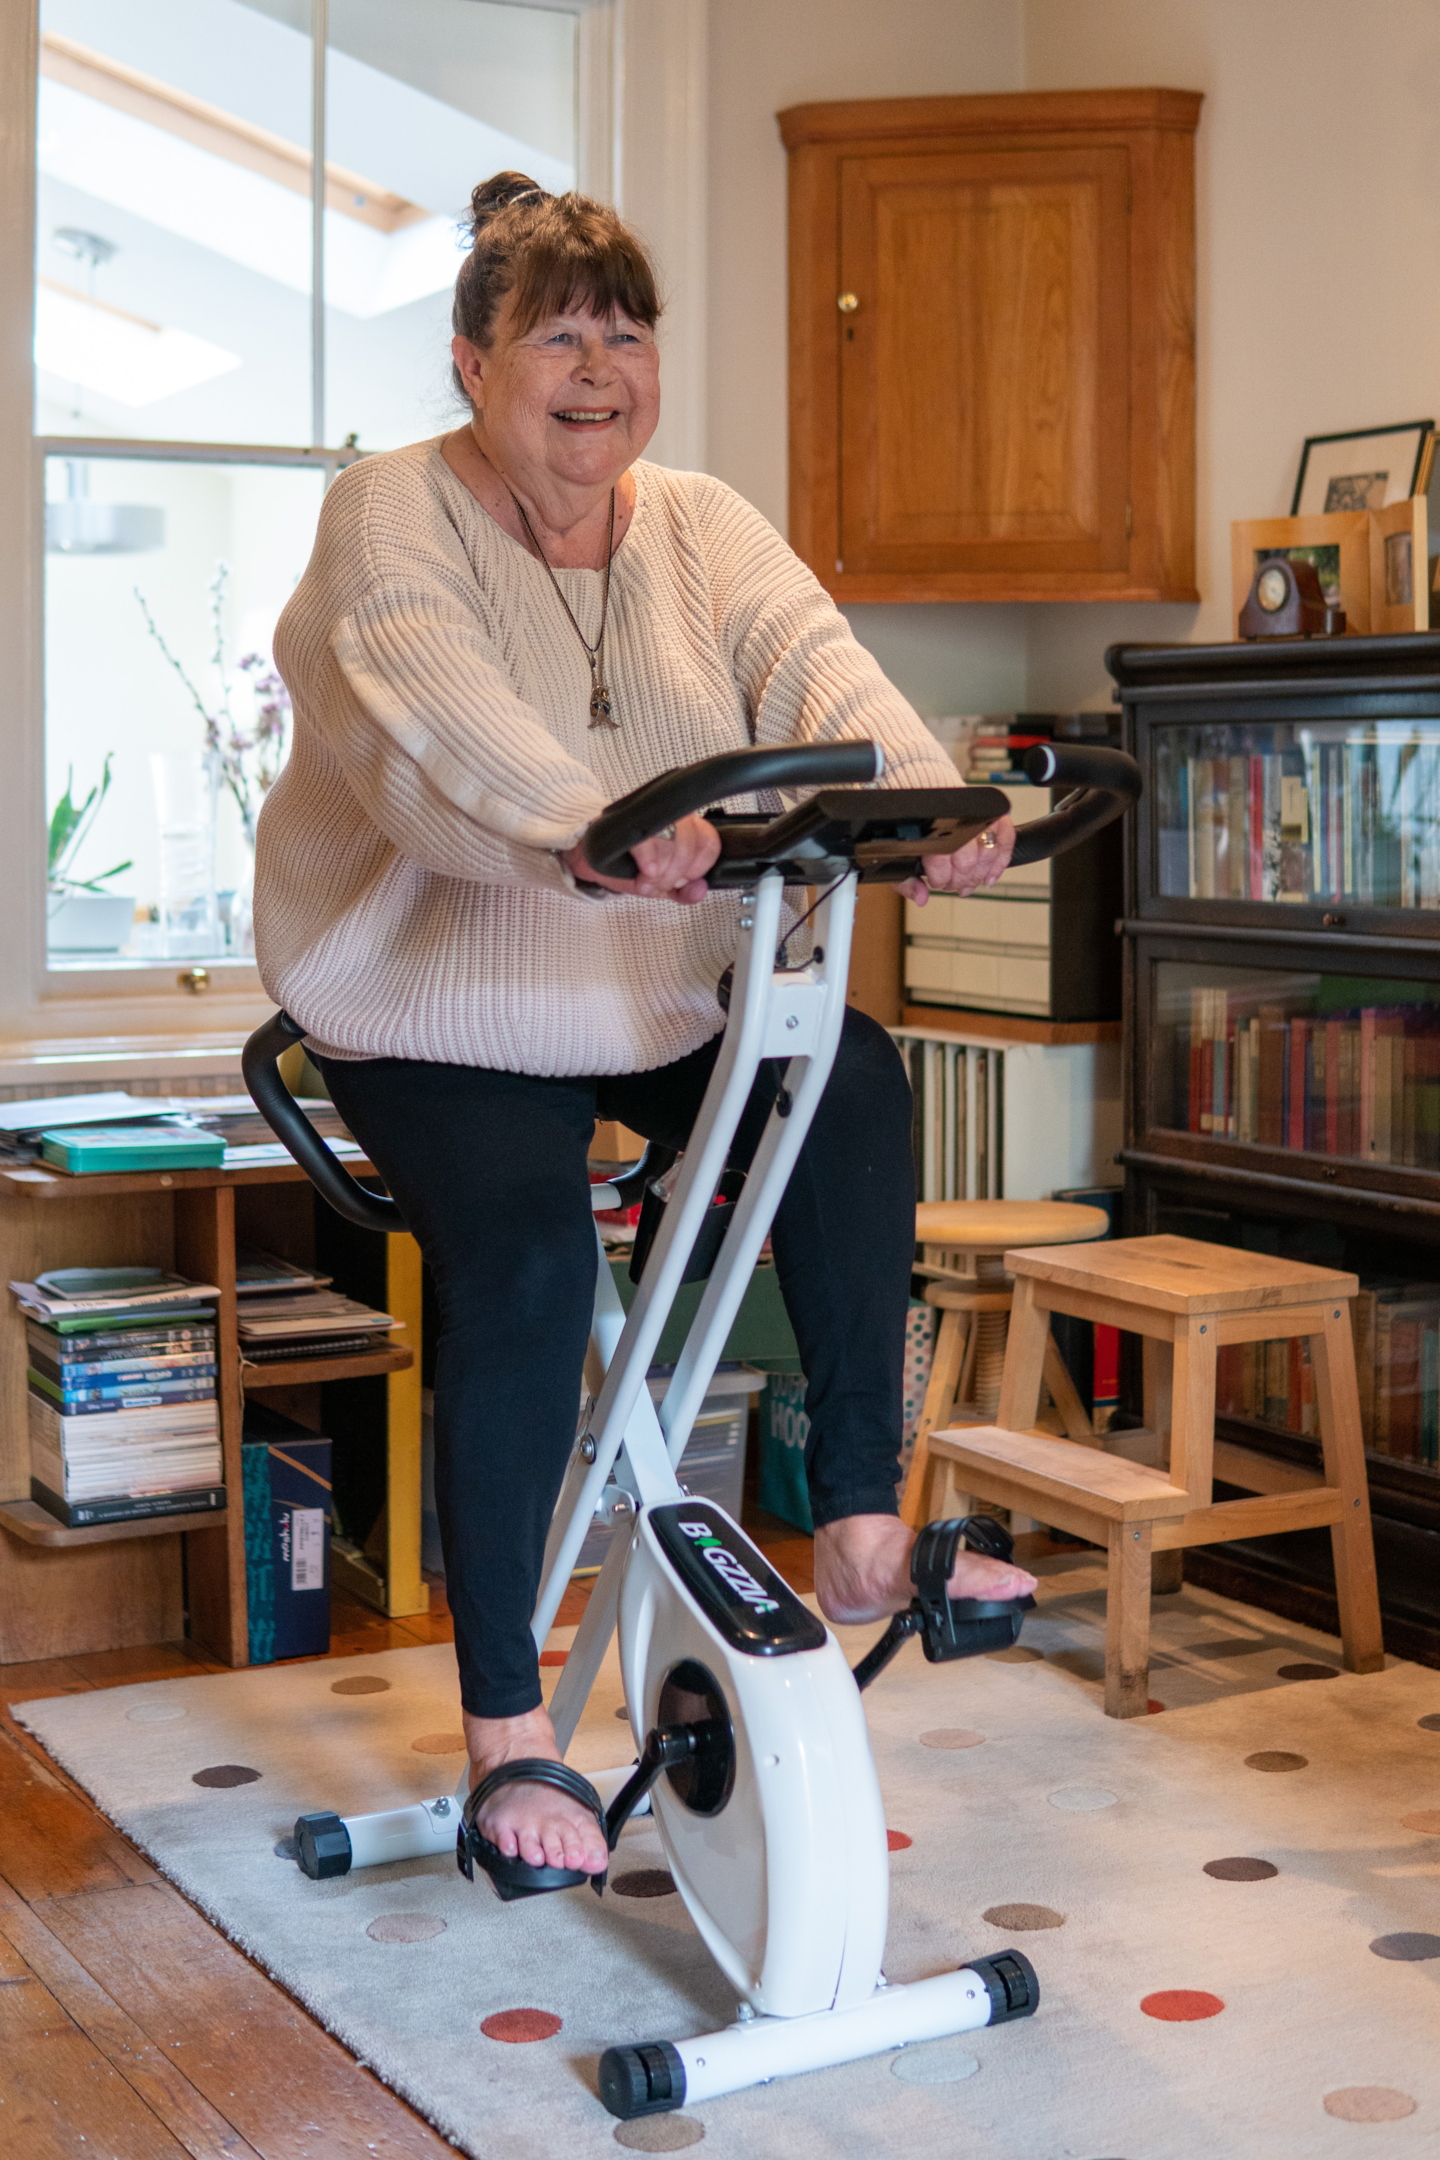 Idosa pedalando em bicicleta ergométrica. Foto de Centre for Ageing Better, Unsplash.